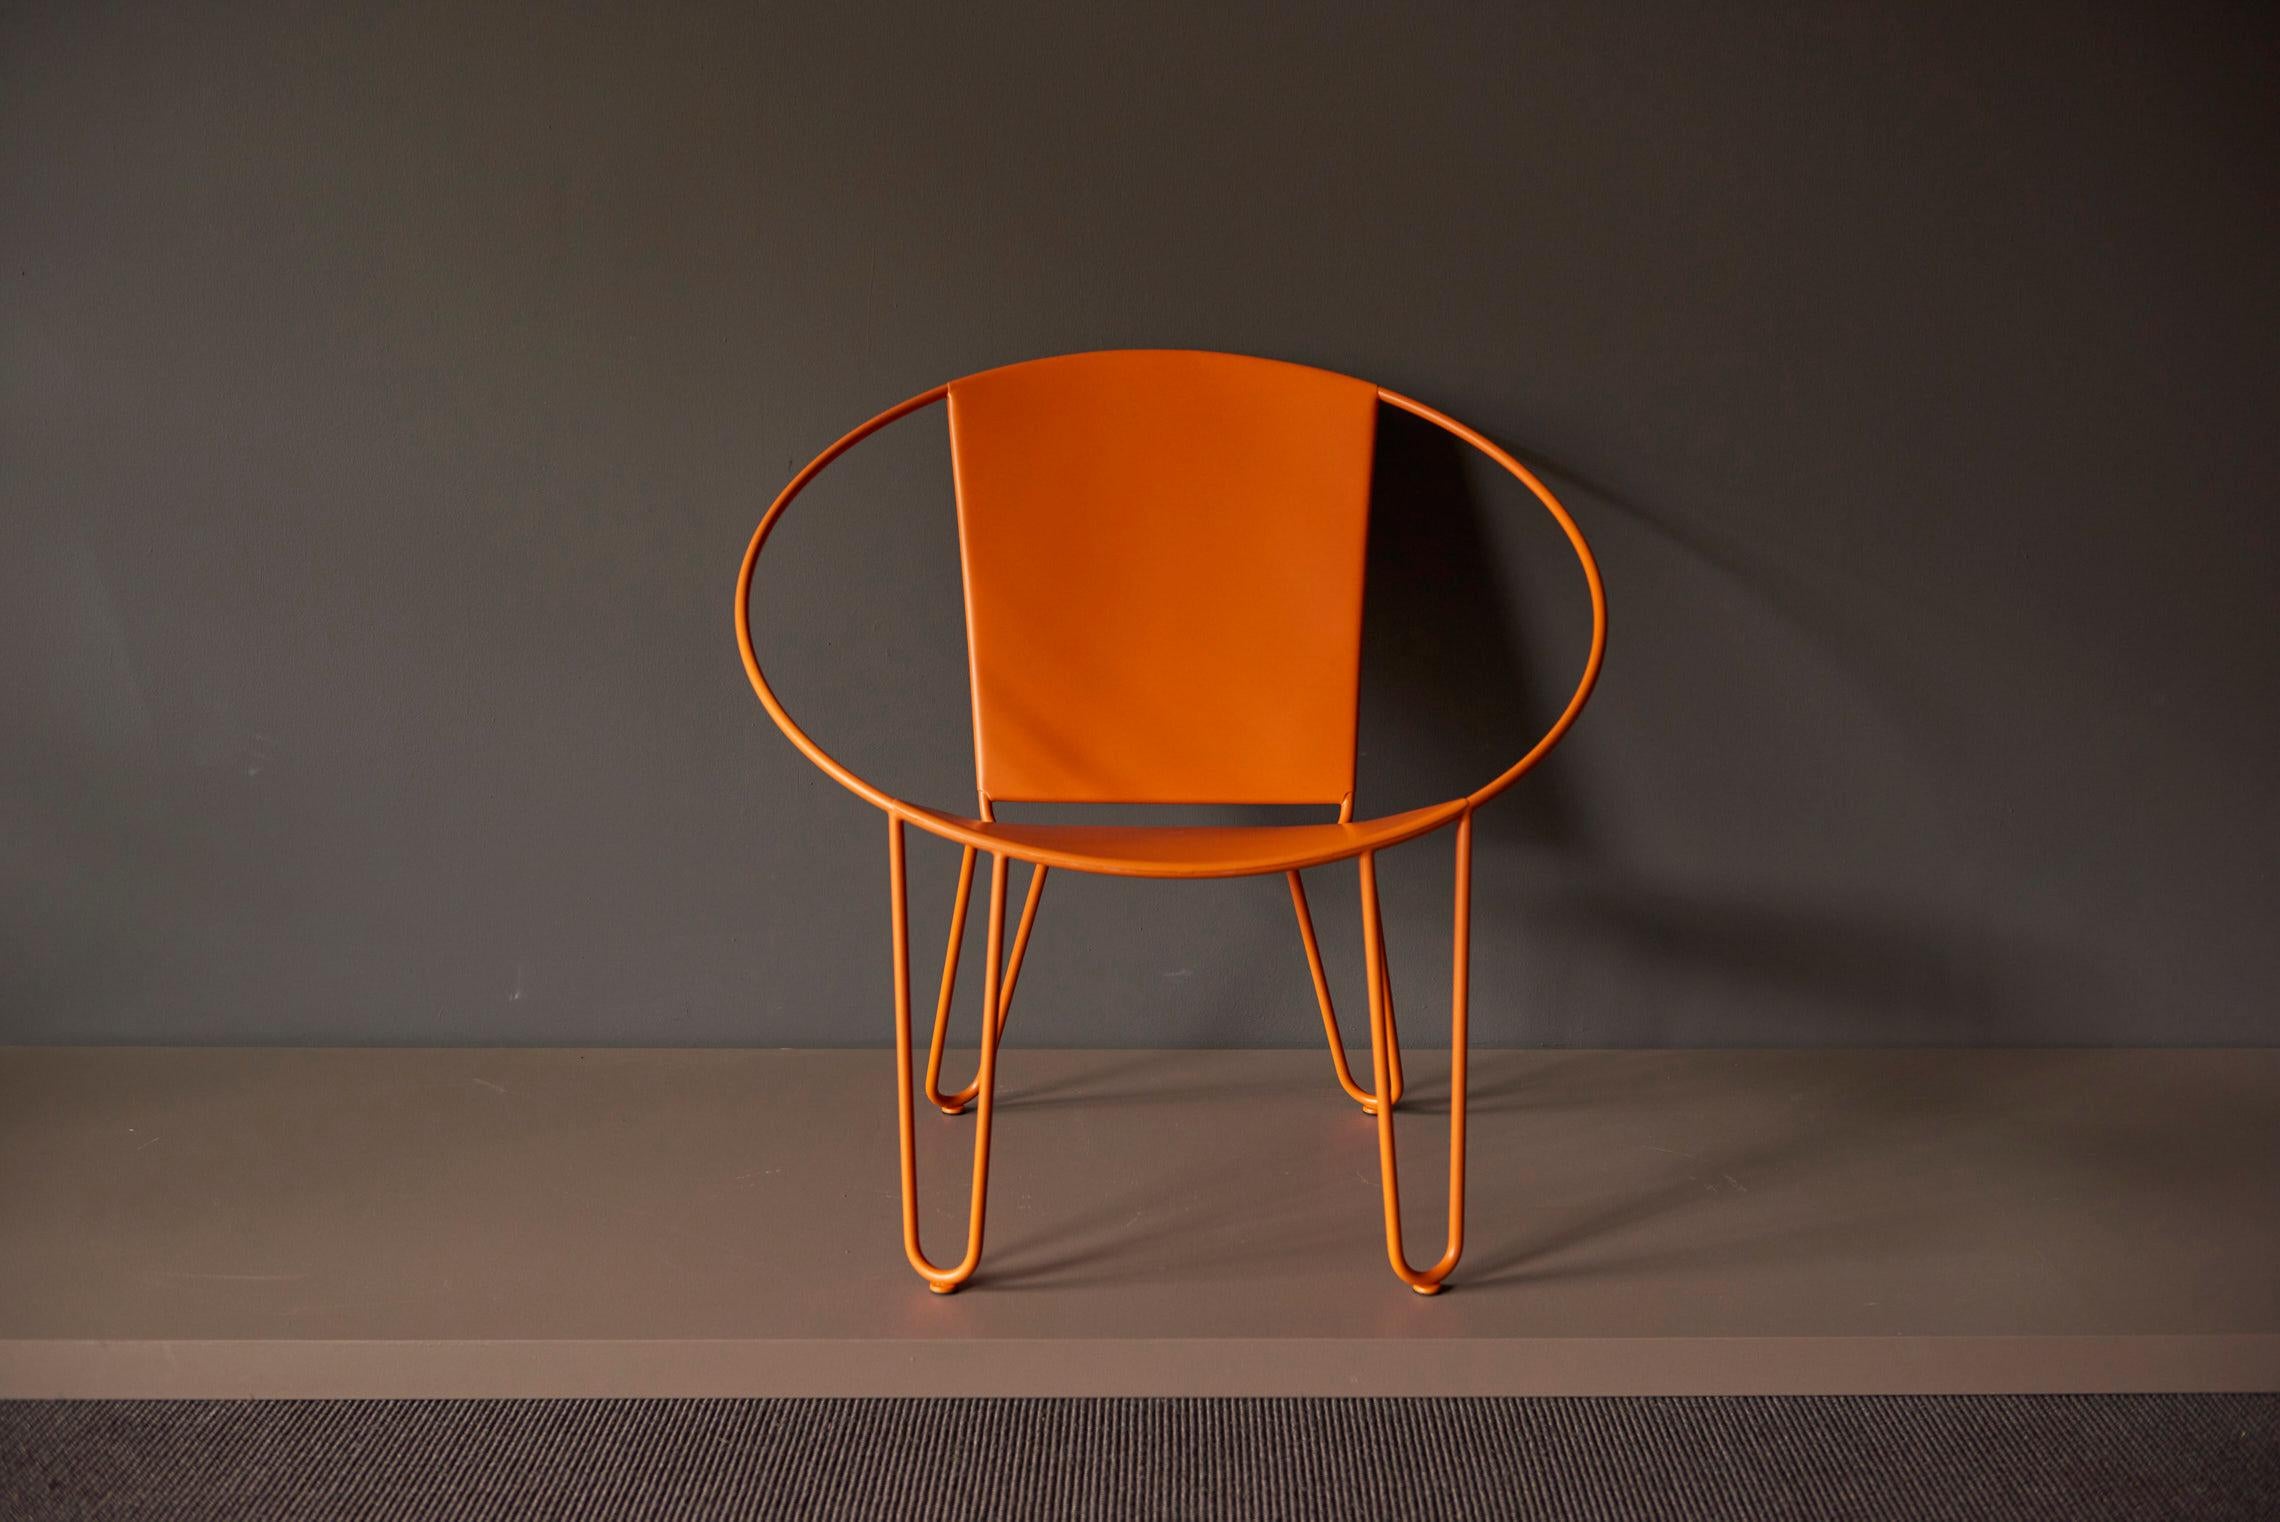 Dieser Stuhl wird in Santa Cruz, CA, USA, von Hand gefertigt und vom Künstler signiert. Die Rahmen sind aus 304L-Edelstahl gefertigt, der 1/2